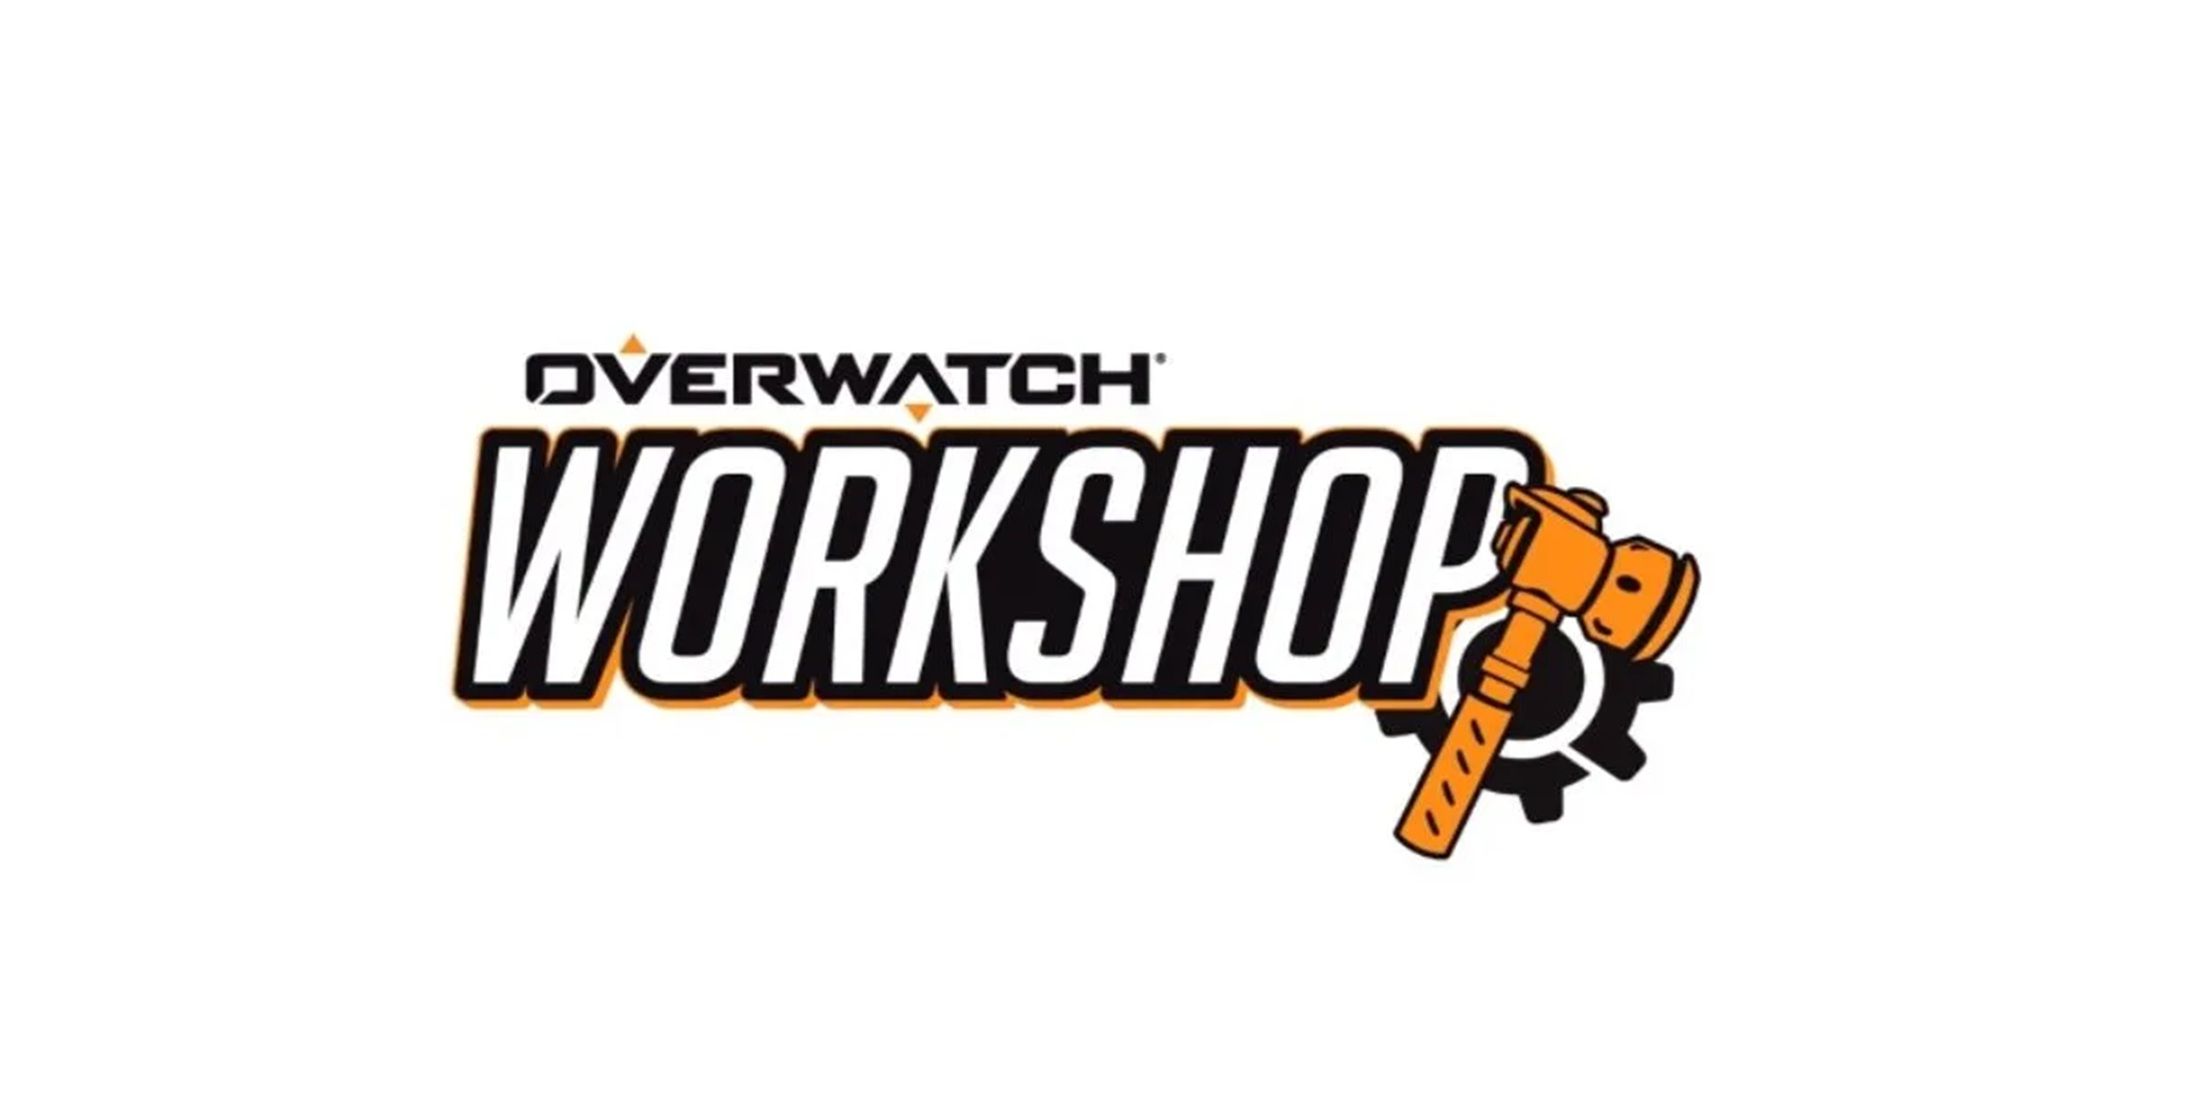 overwatch-2-workshop